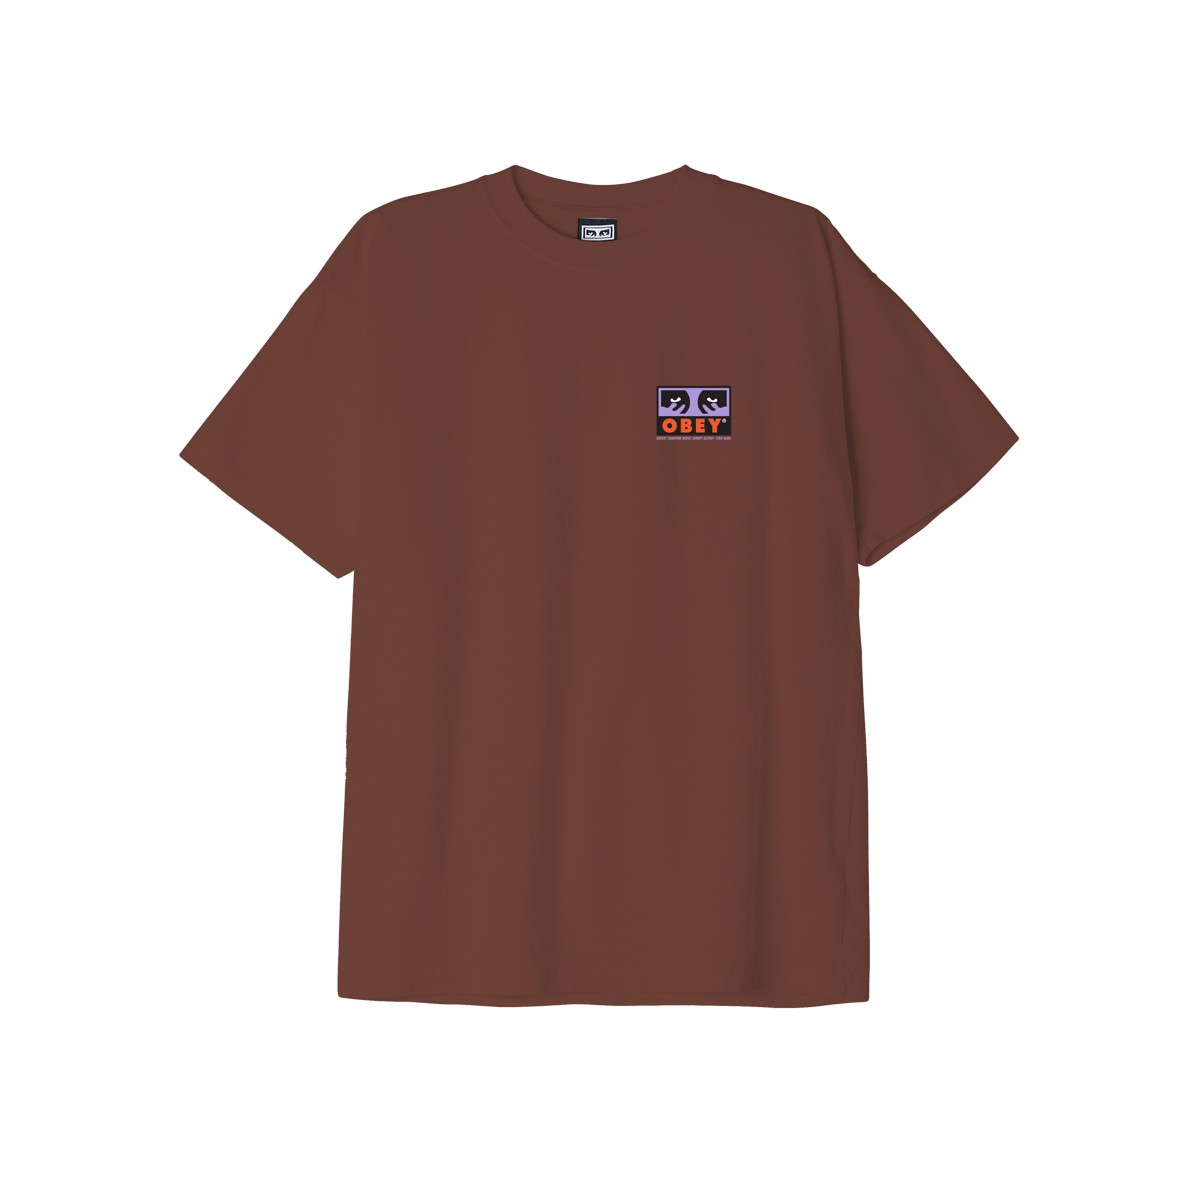 OBEY - T-shirt marron visuel multicolor